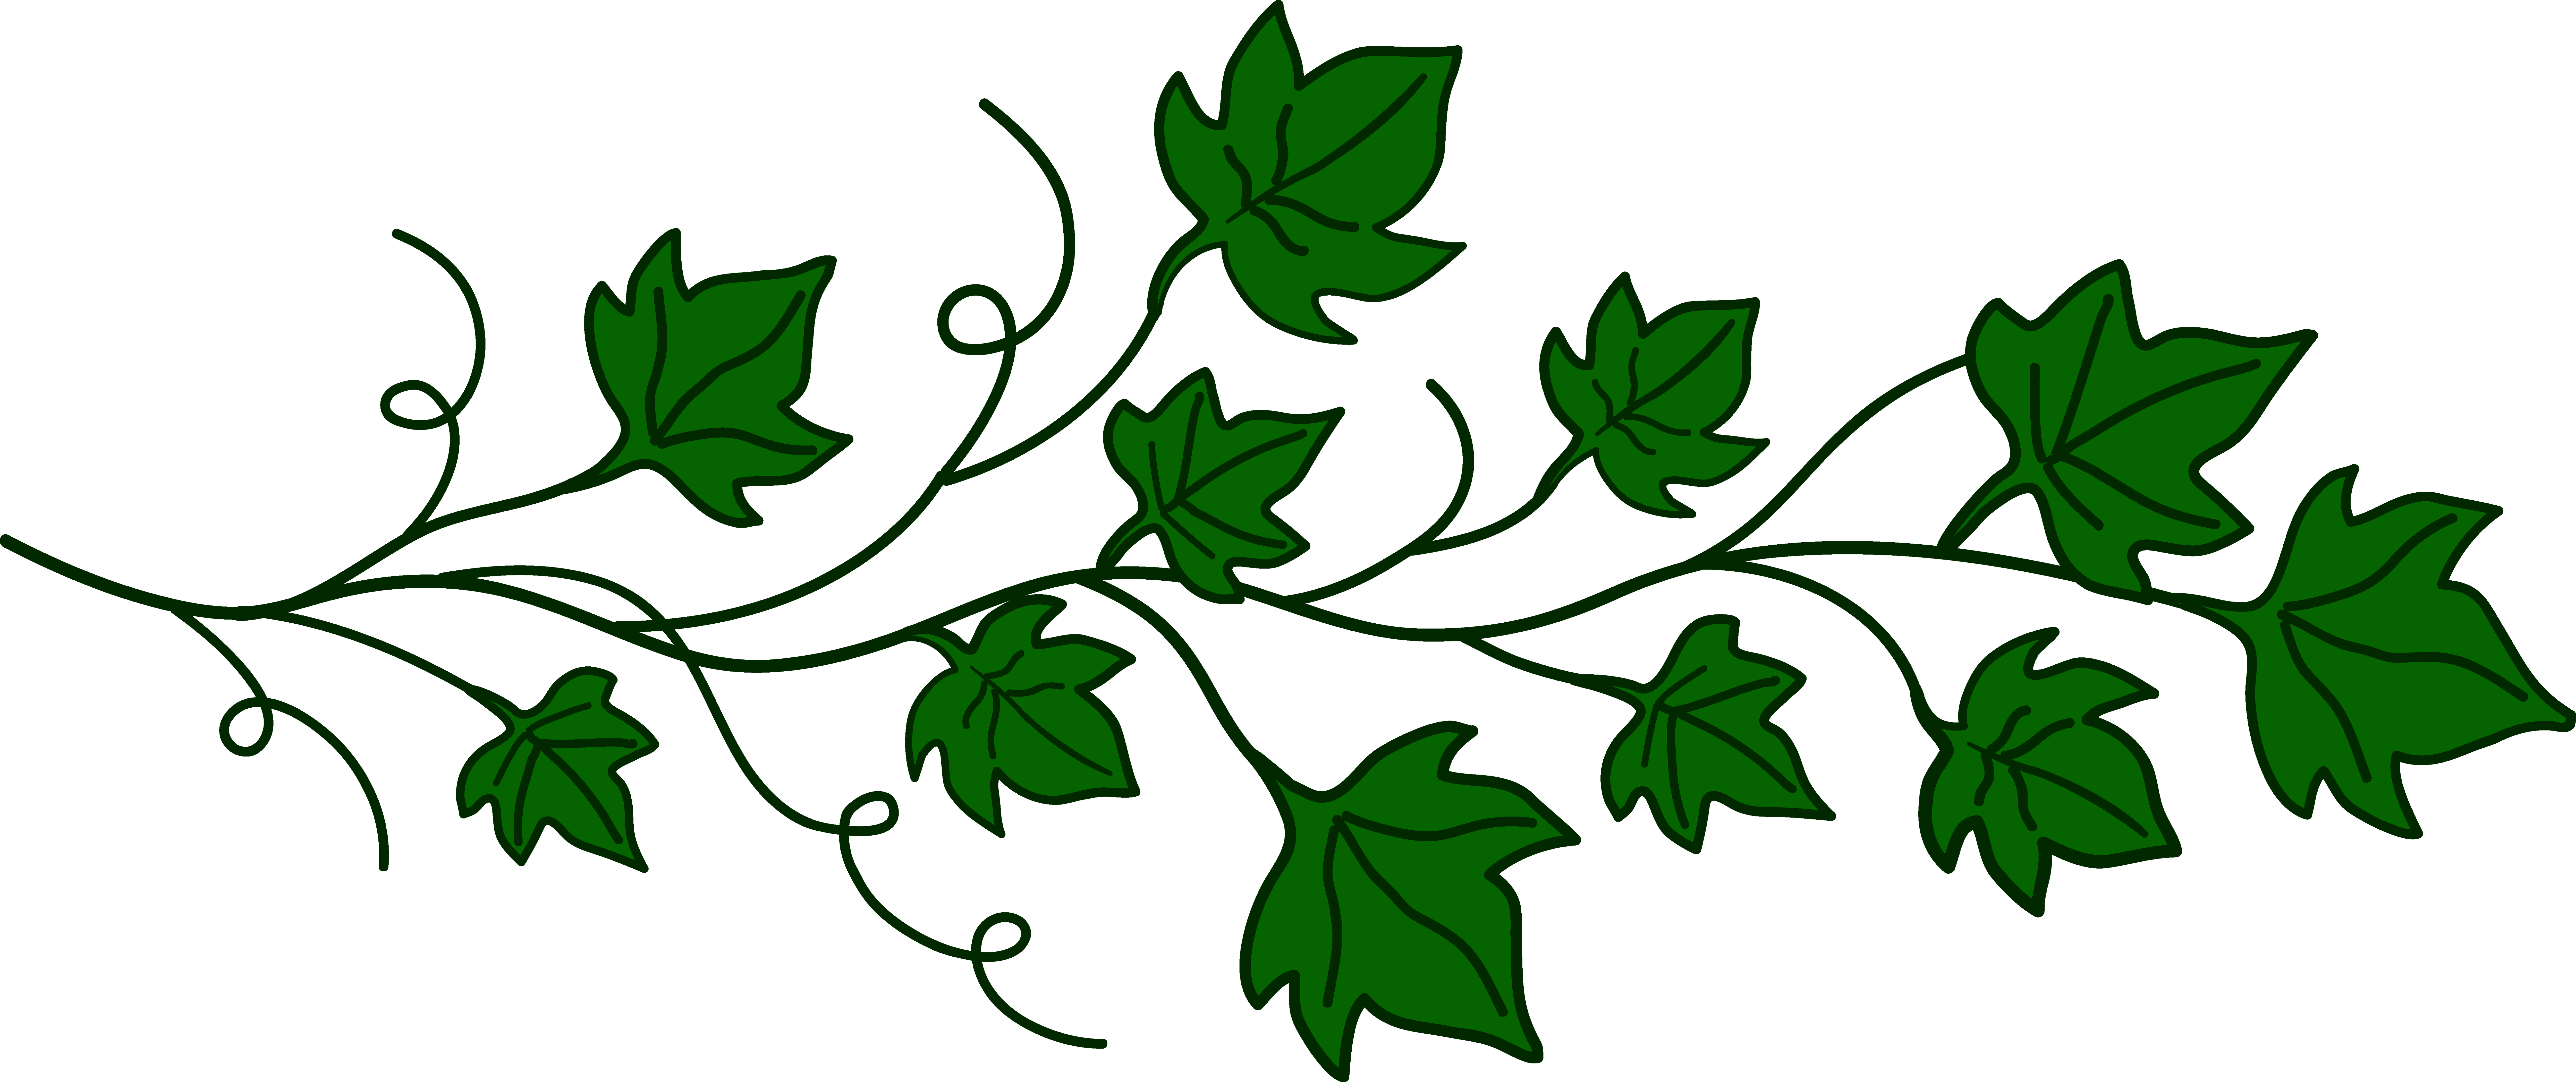 Leaf Vine Drawing at GetDrawings | Free download